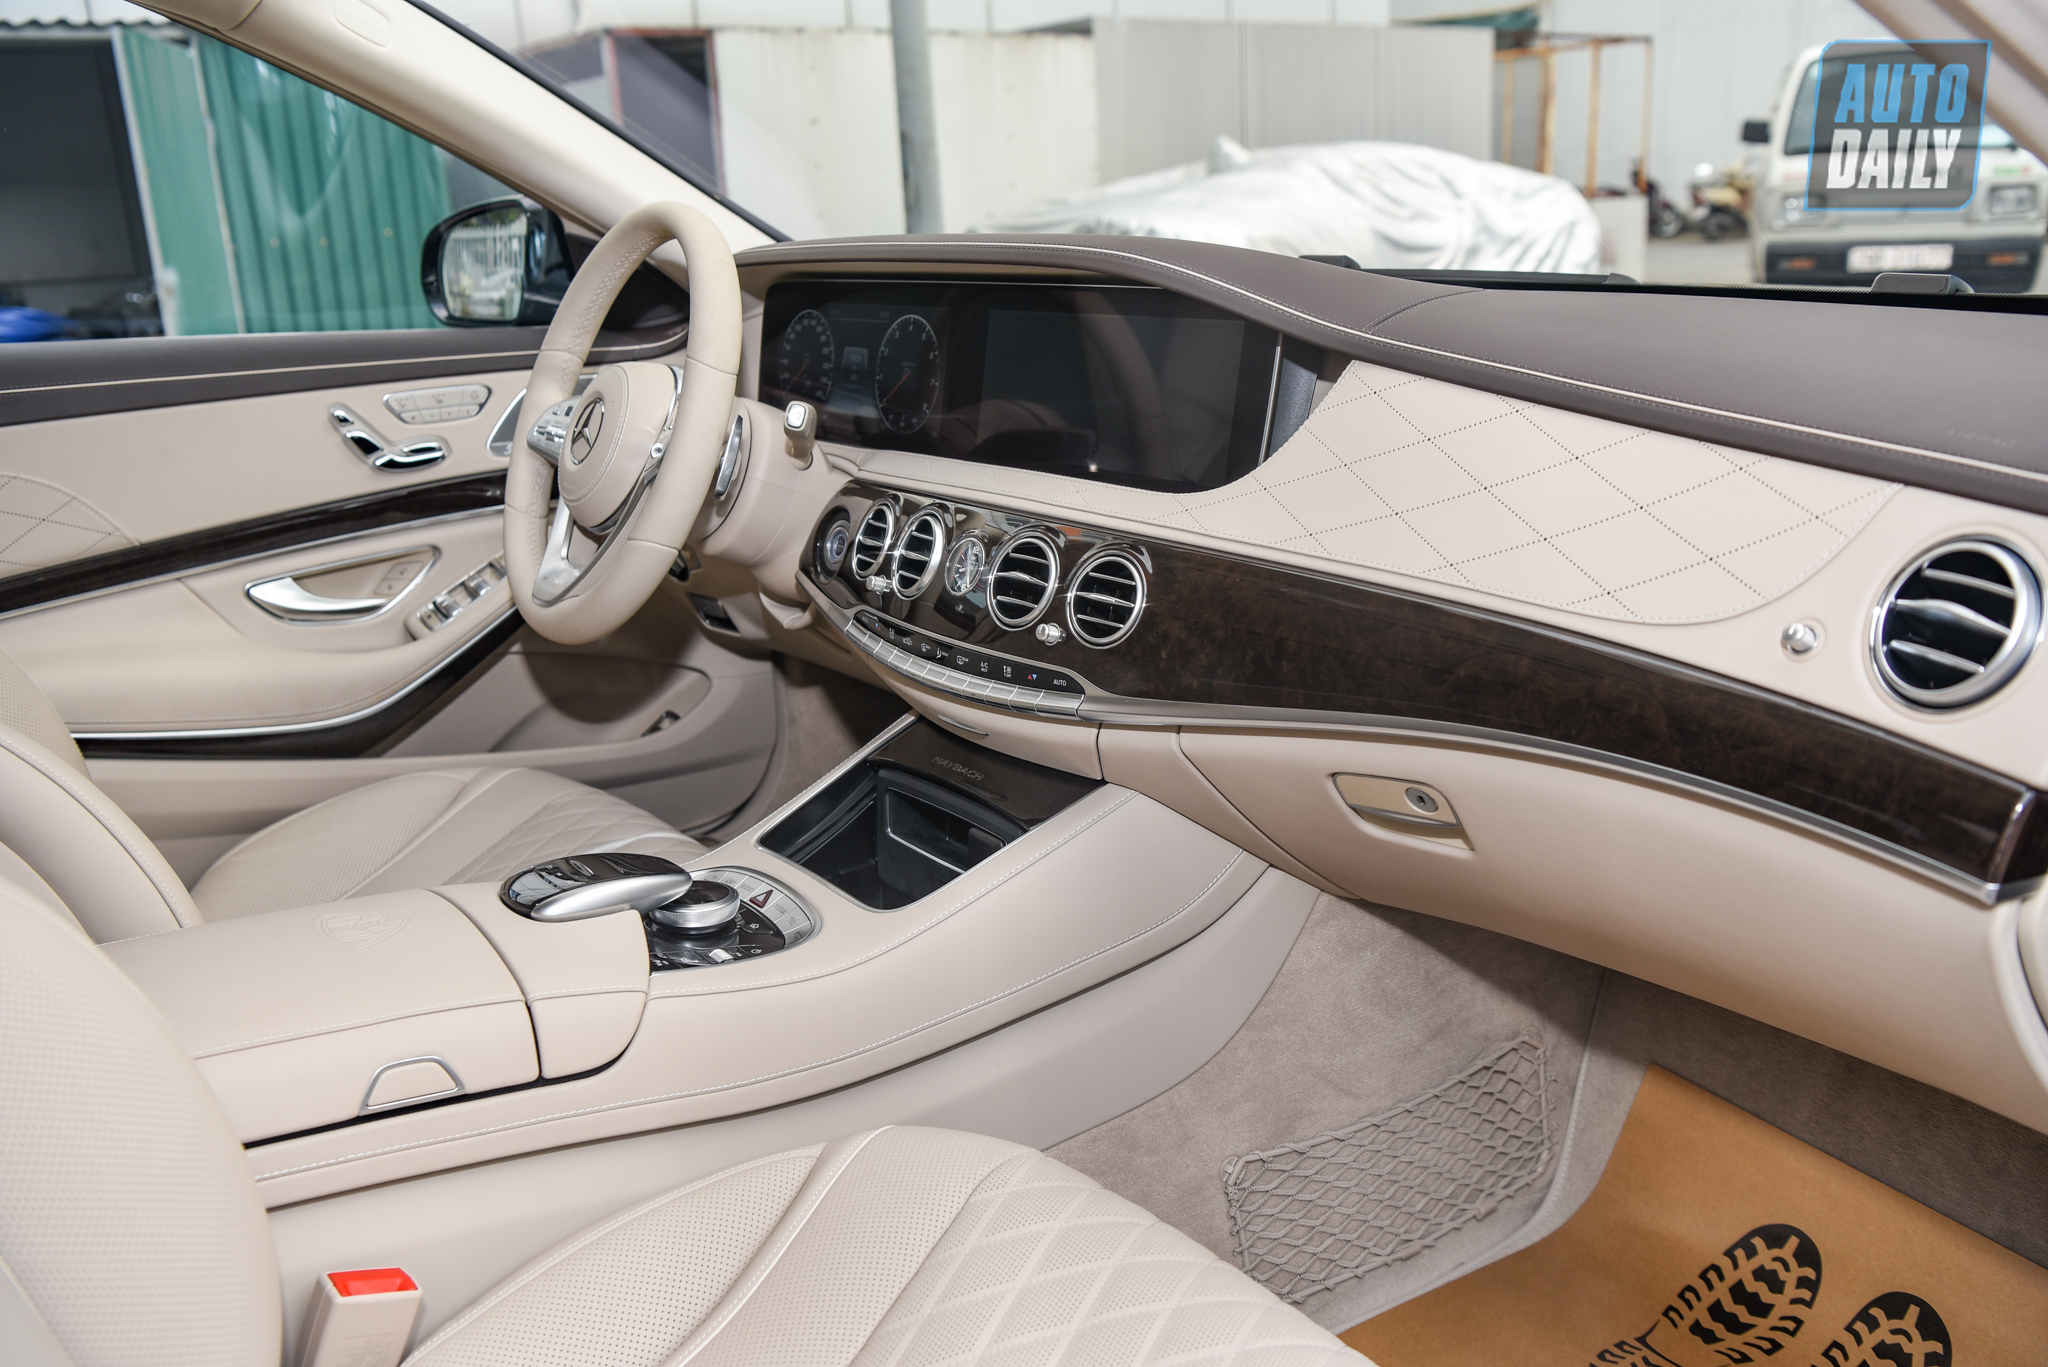 Limousine siêu sang cho 'Chủ tịch' Mercedes-Maybach S650 Pullman đẳng cấp cỡ nào? dsc-0859.jpg